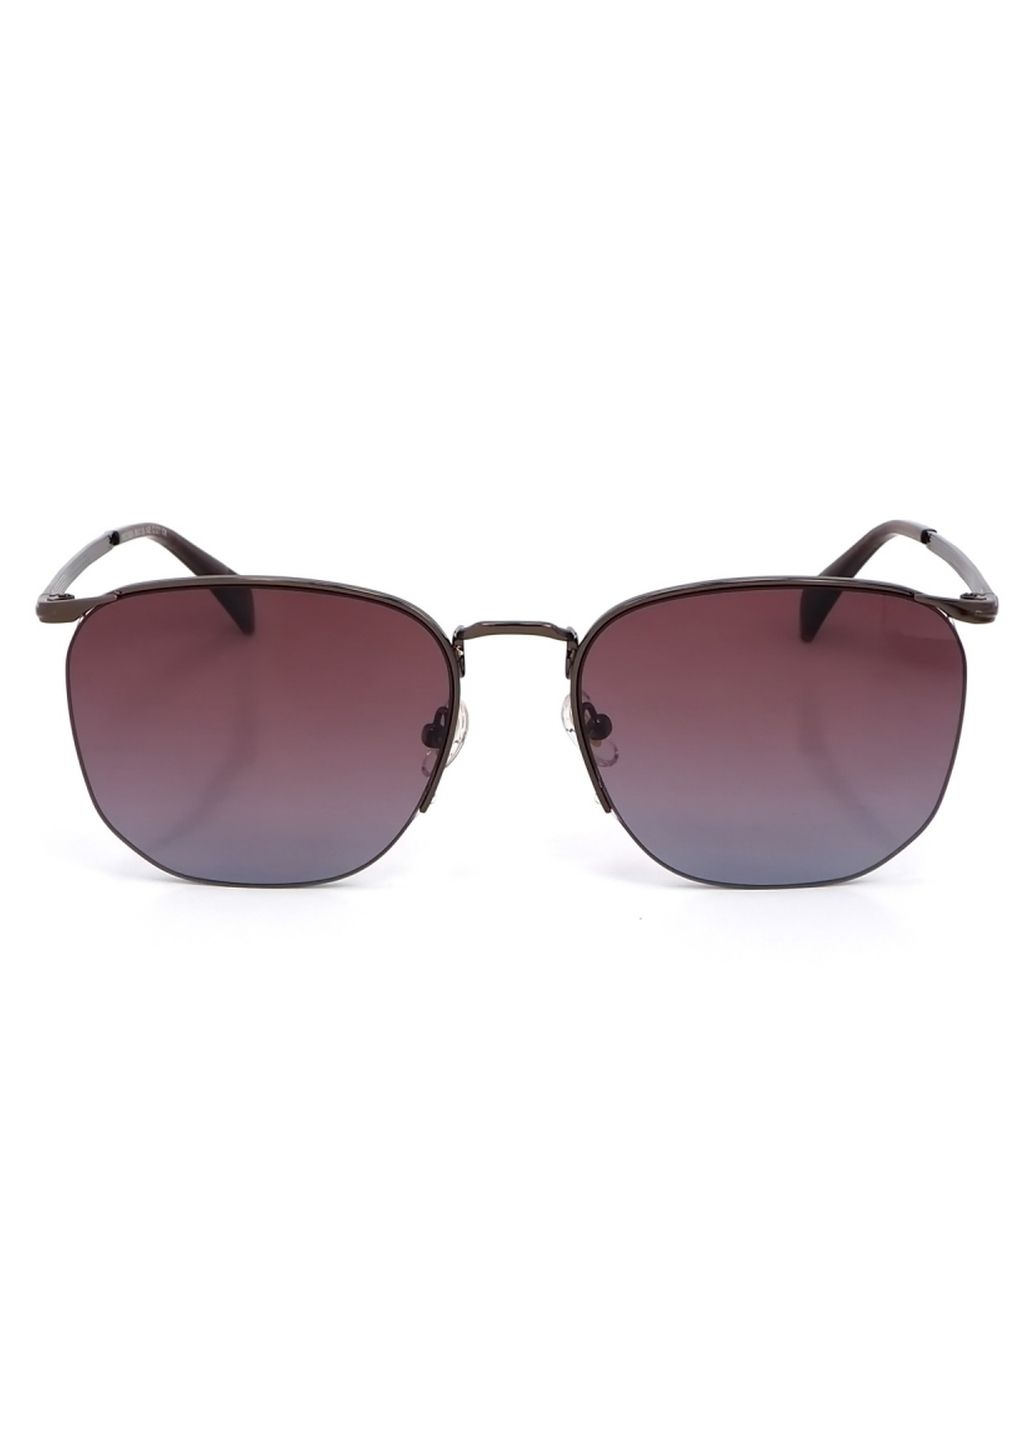 Купить Женские солнцезащитные очки Merlini с поляризацией S31809P 117018 - Коричневый в интернет-магазине